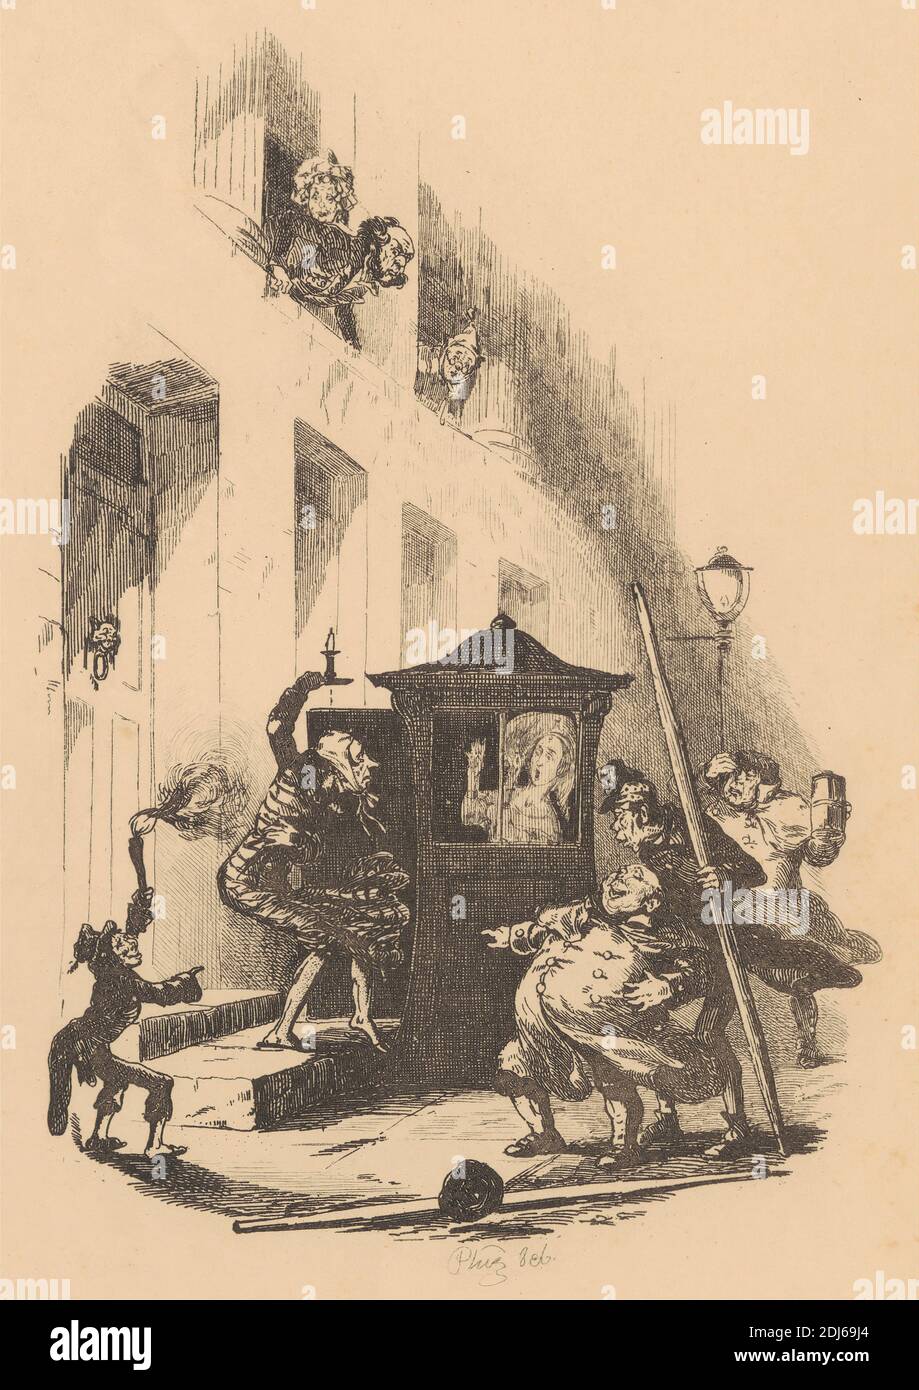 La situación del Sr. Winkle cuando la puerta sonó a, impresión hecha por Hablot Knight Browne, 1815–1882, británico, 1837, grabado en papel de move crema de grosor moderado, ligeramente texturizado Foto de stock